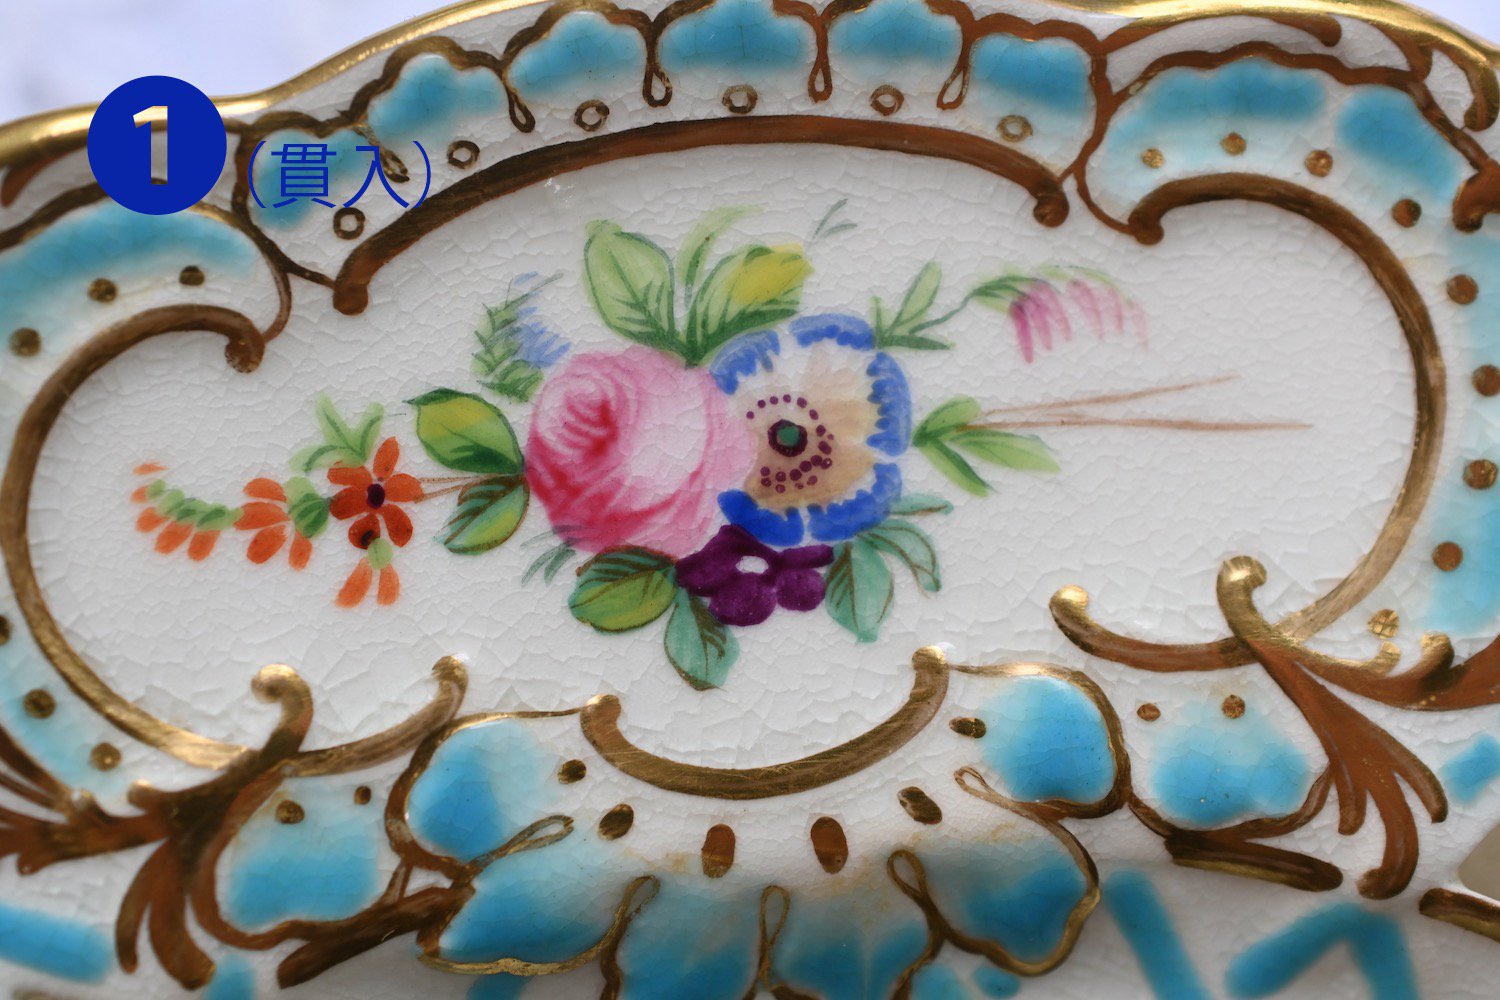 ミントン　ヴィクトリア時代・透かし細工ミントンブルーと手描きの鮮やかなお花模様のキャビネットプレートをイギリス　コッツウォルズよりお届けいたします。